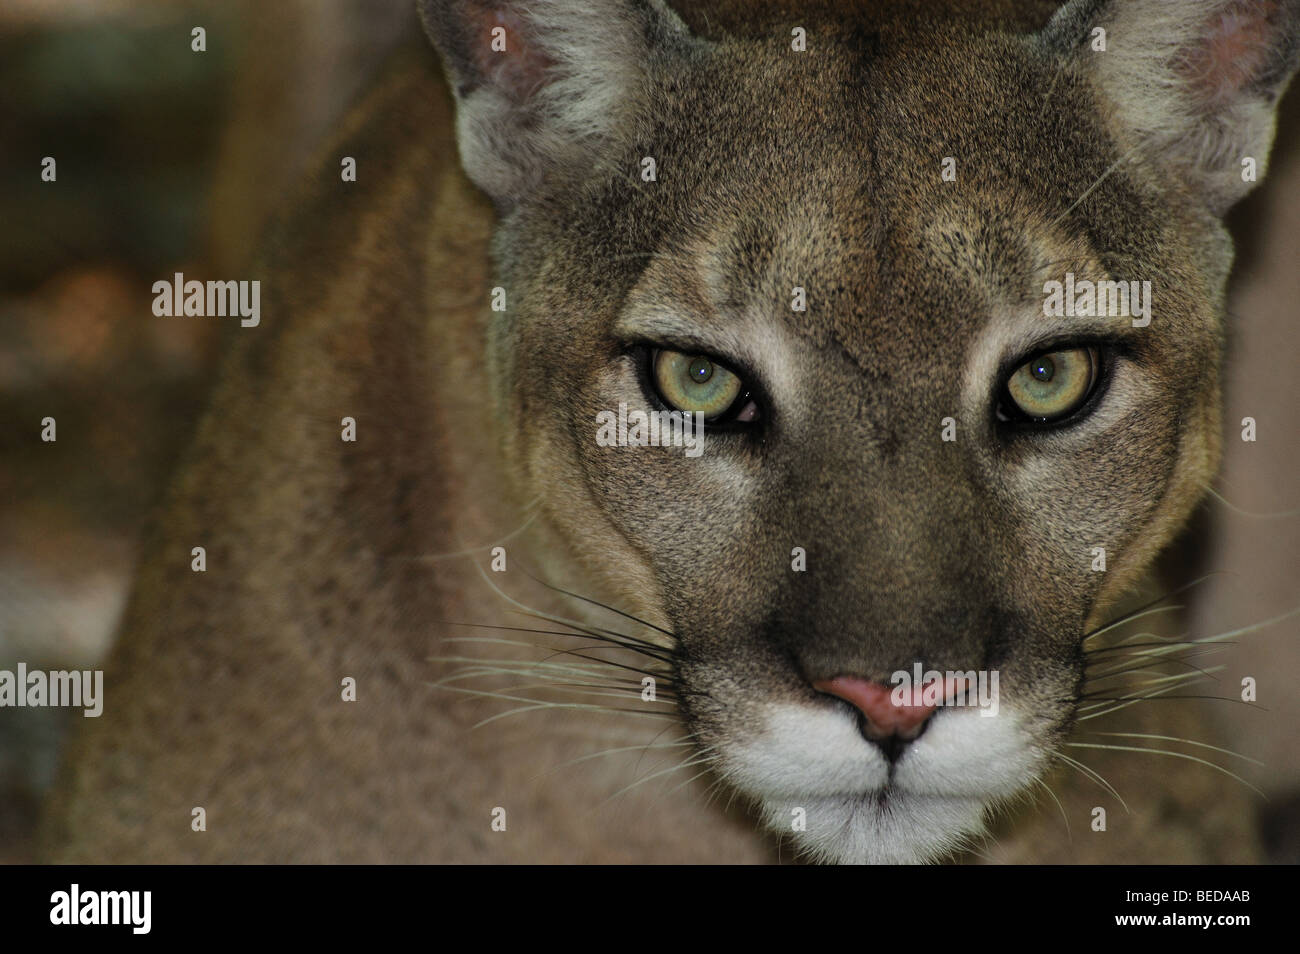 Florida Panther, Puma concolor Coryi, Florida, Captive Stockfotografie -  Alamy